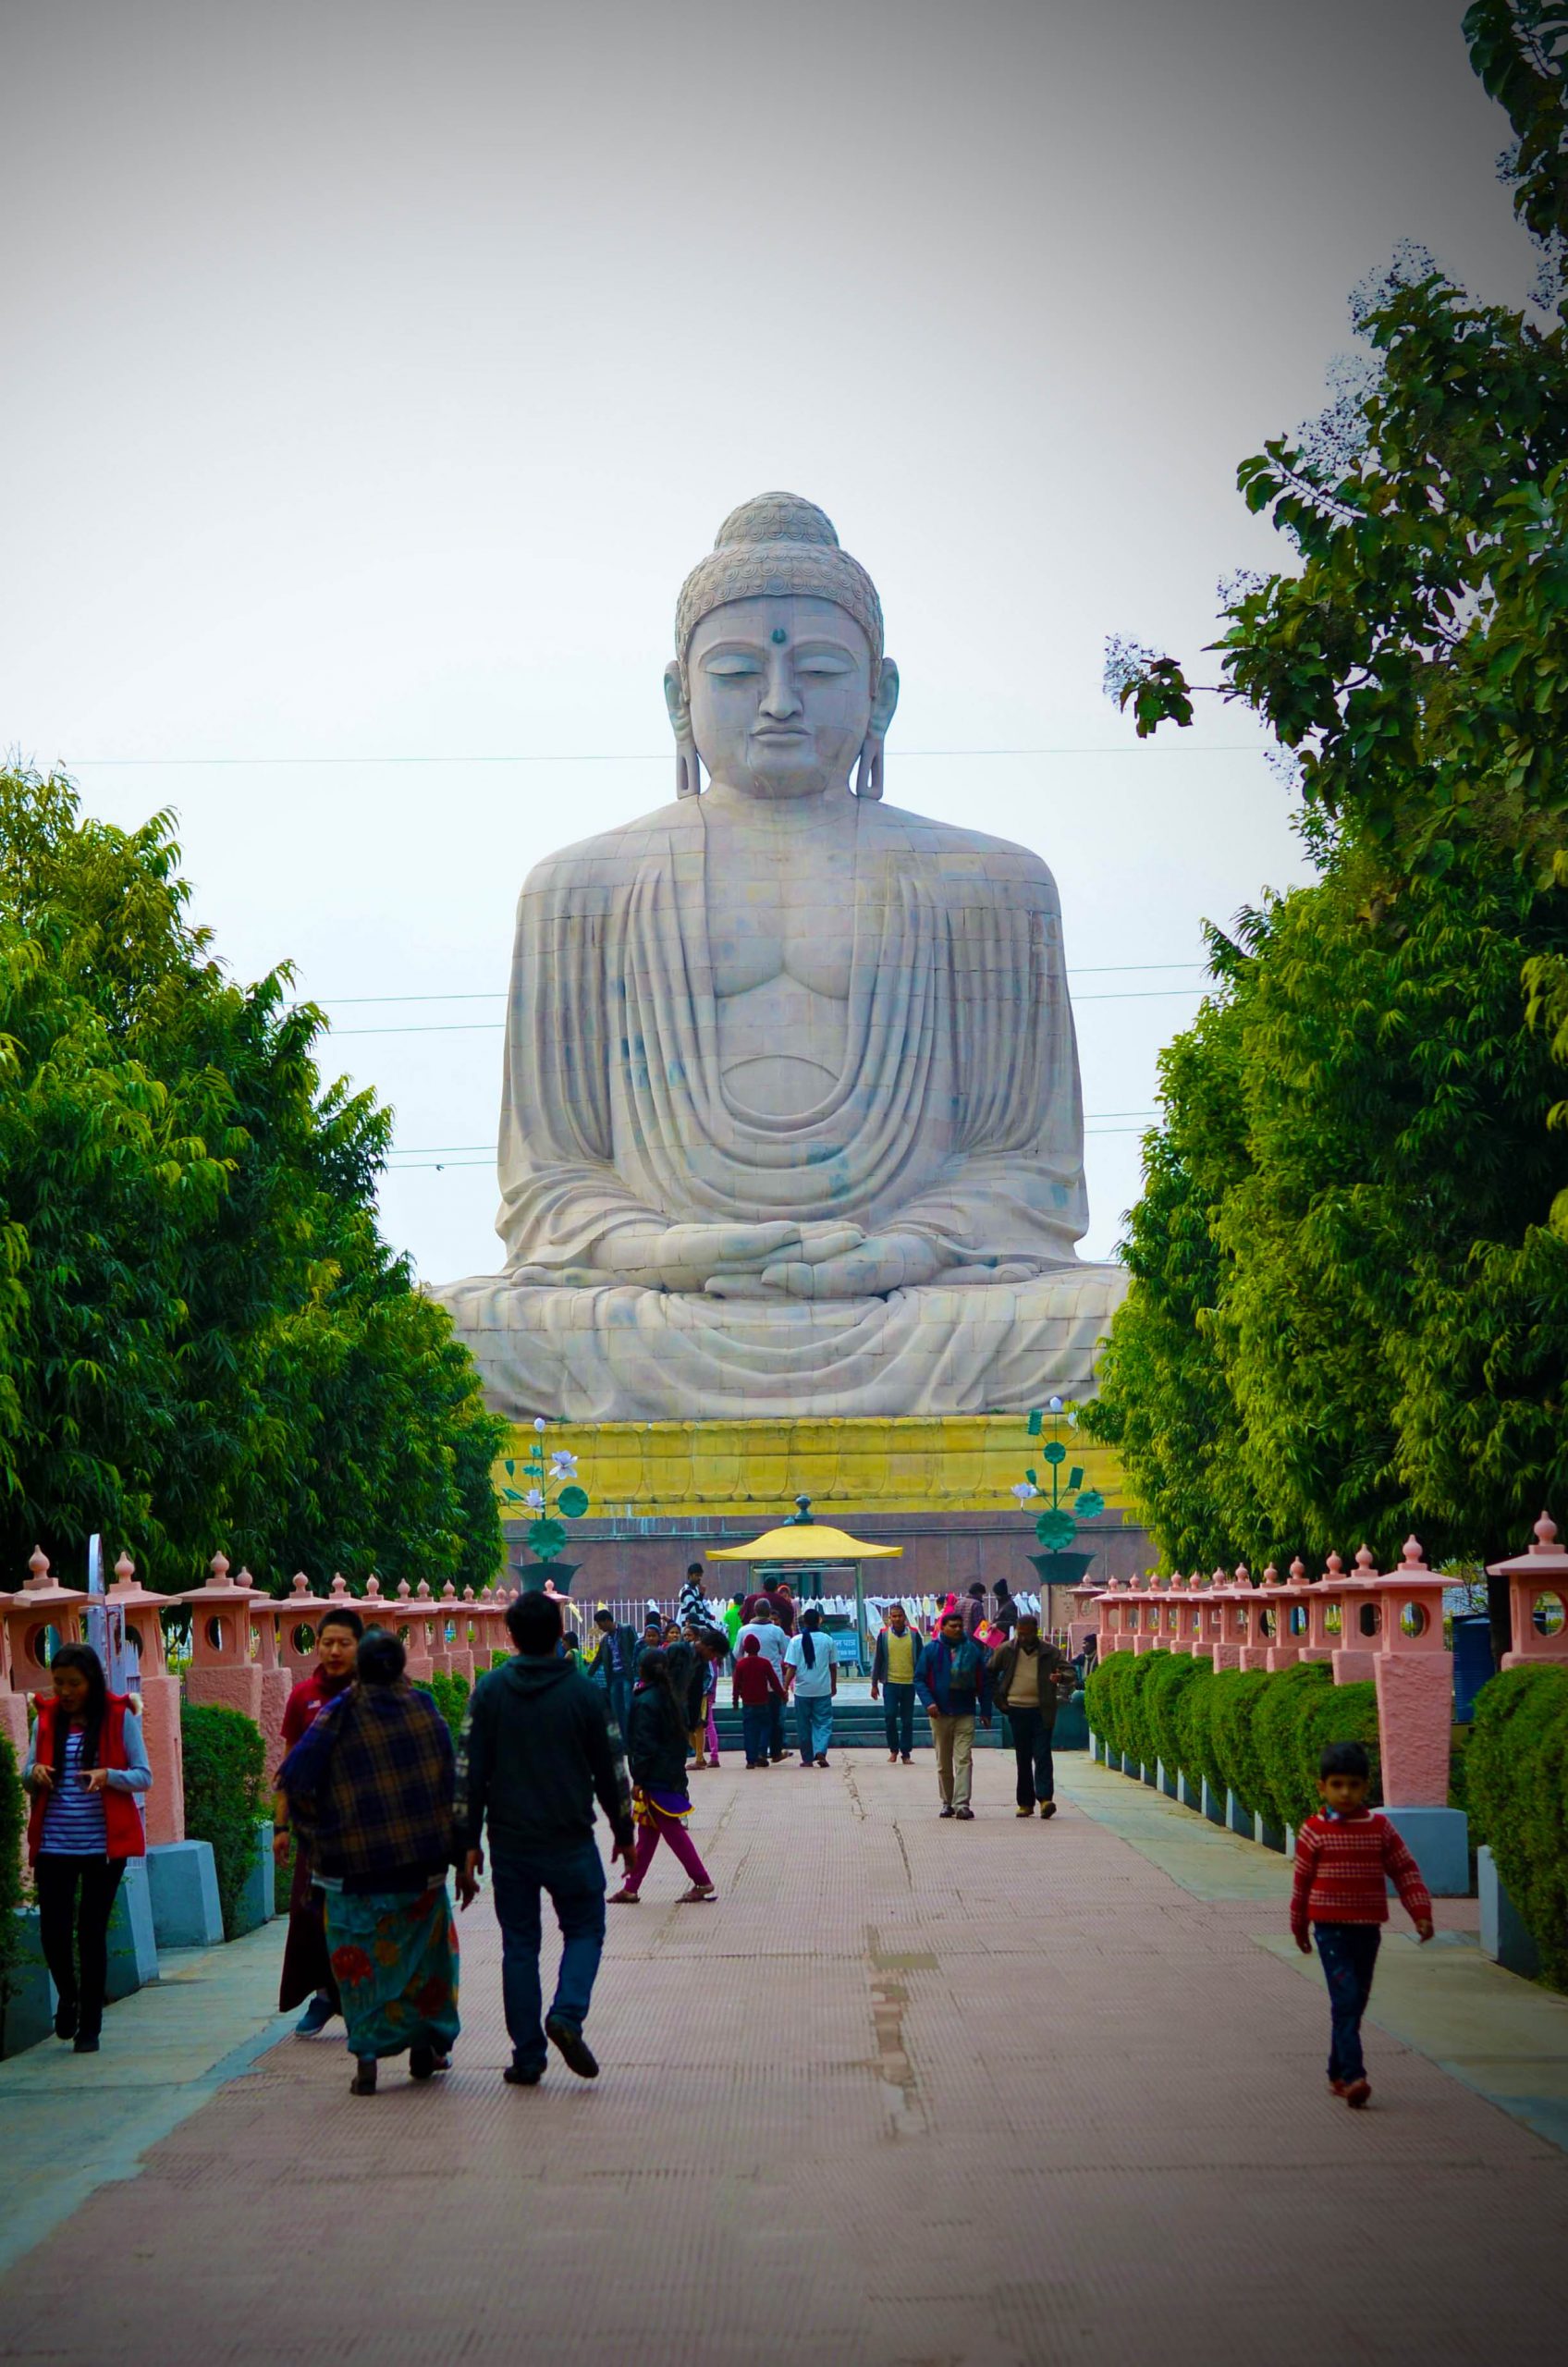 Bodh Gaya Statue at Mahabodhi